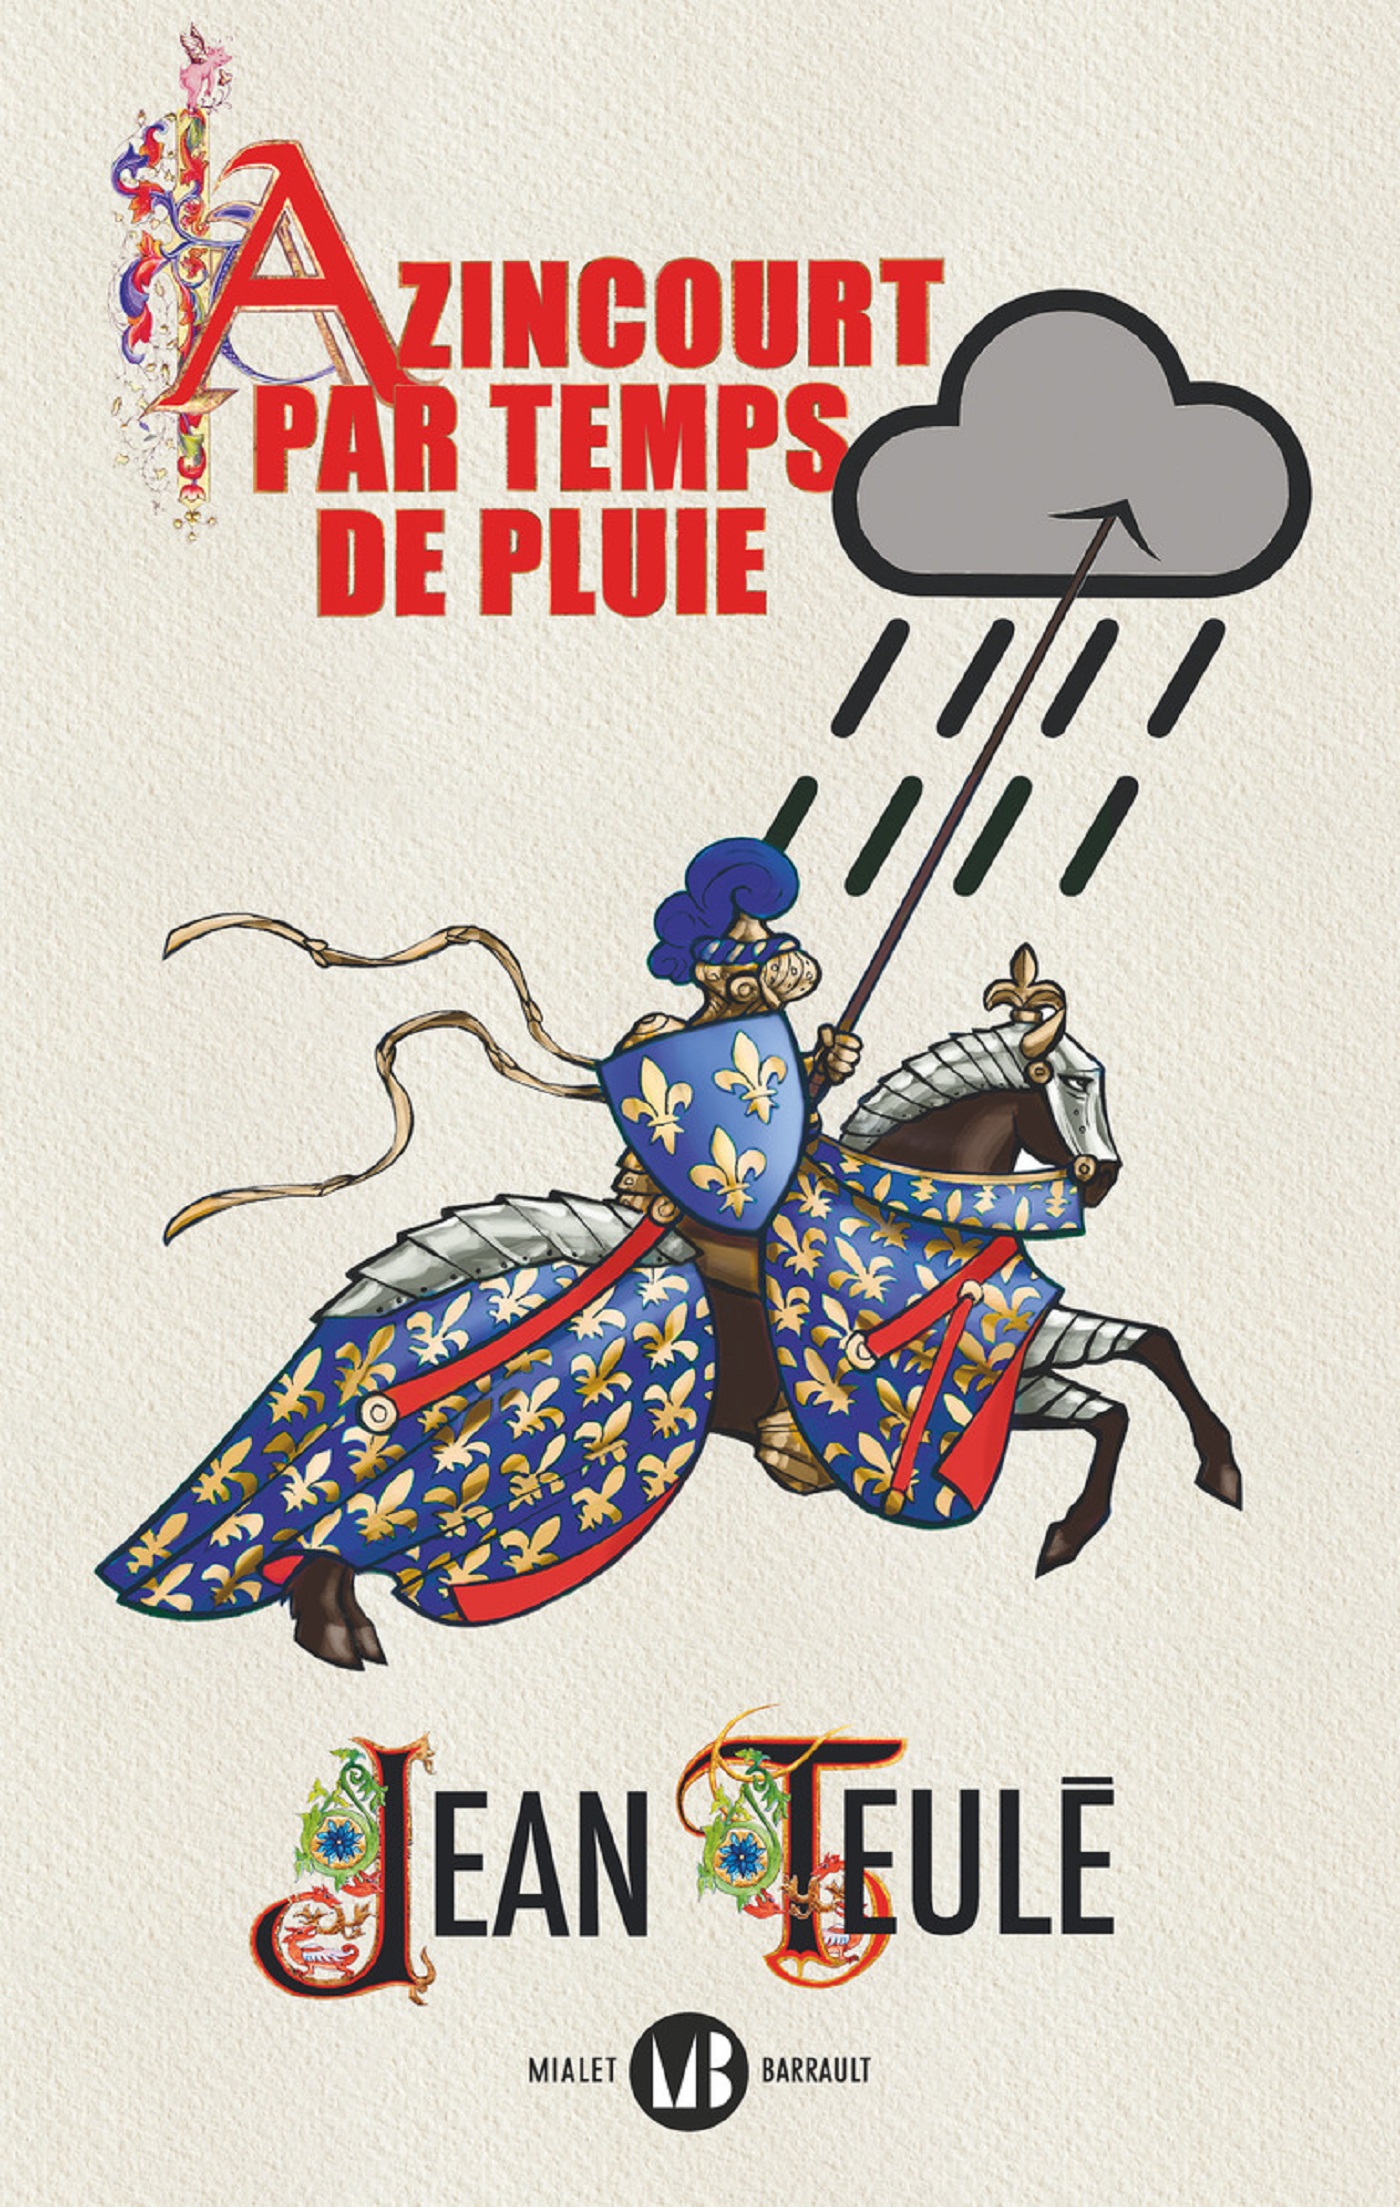 Afficher "Azincourt par temps de pluie"